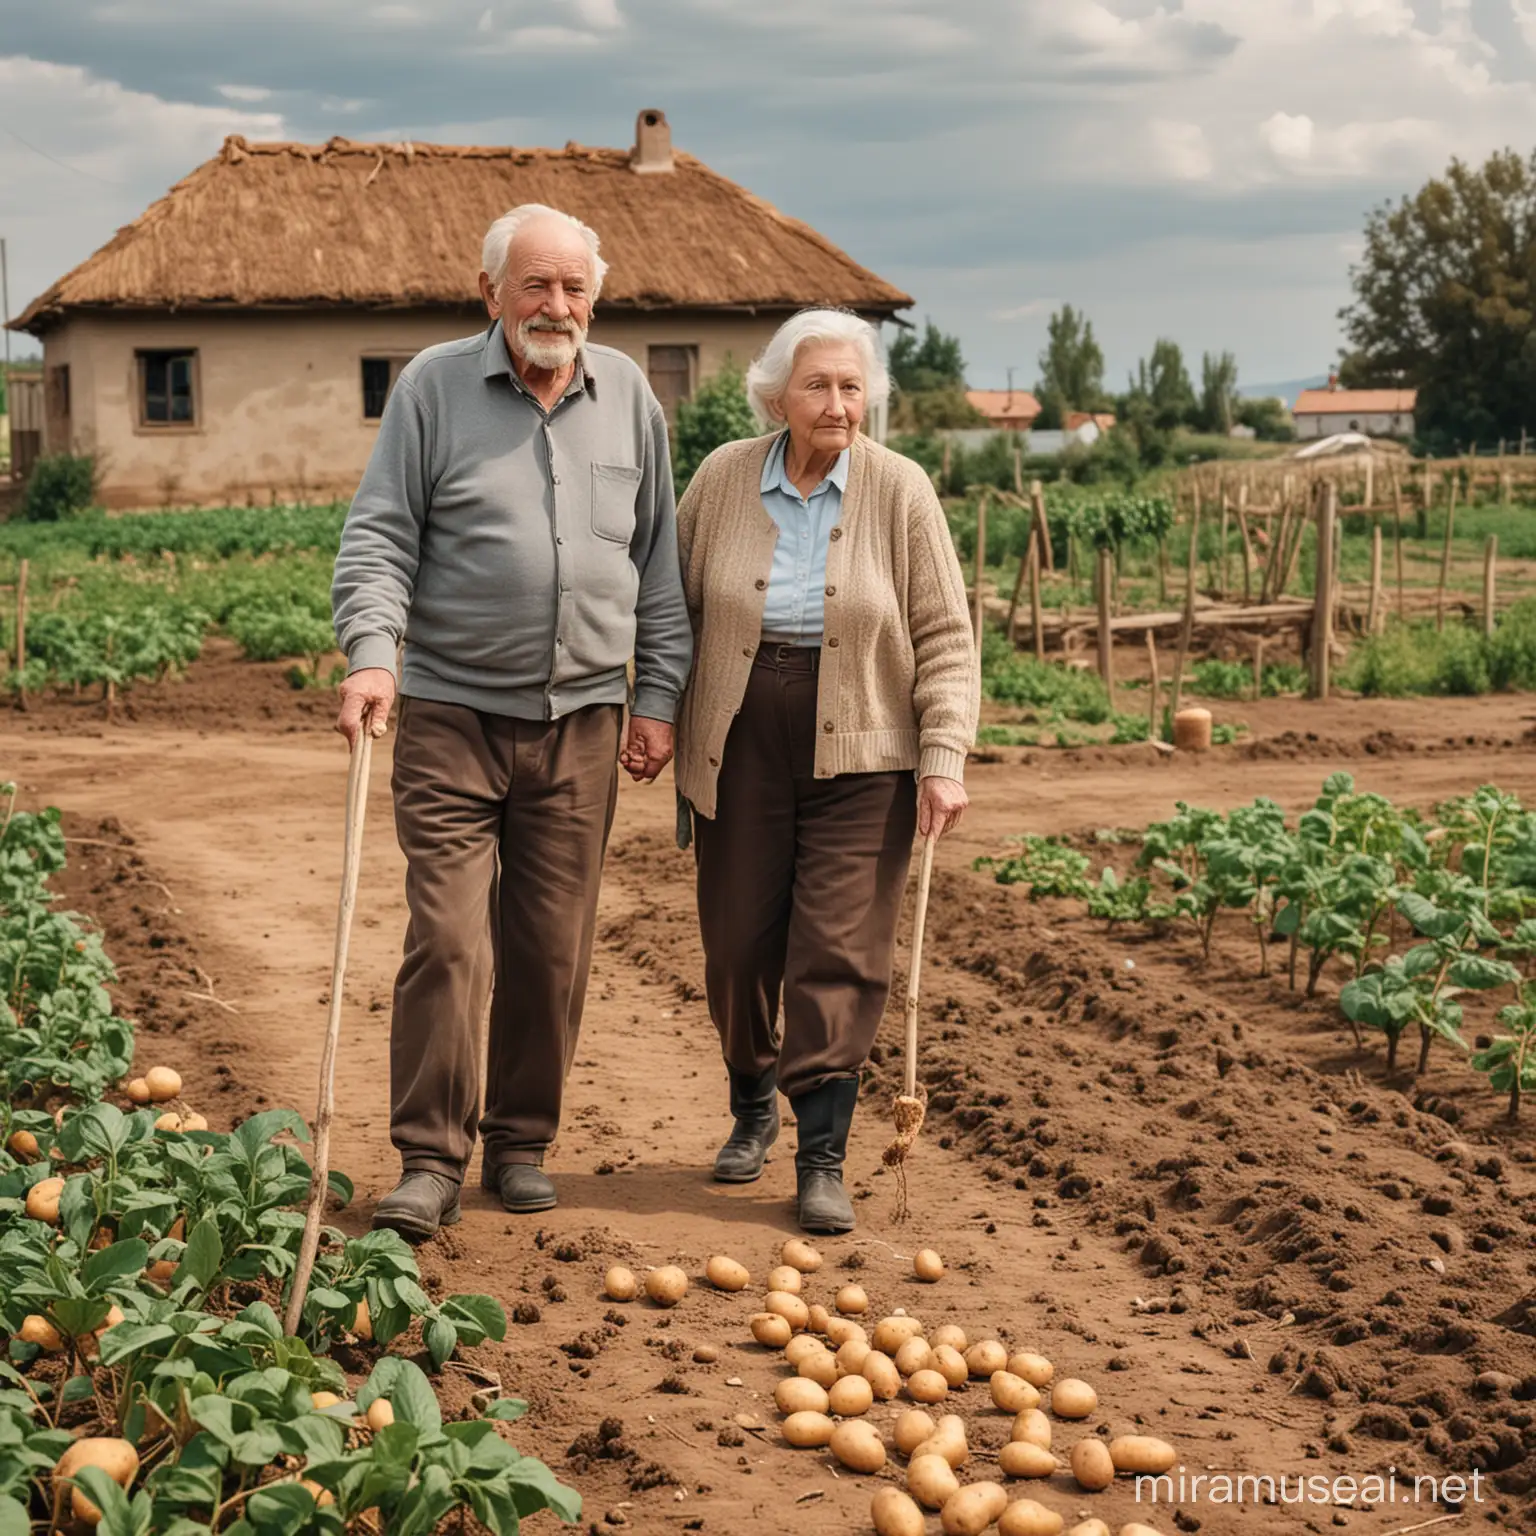 vieil homme marchant sur sa terre avec sa femme âgée lui montrant son champs de pommes de terre et sa maison en fond de toile